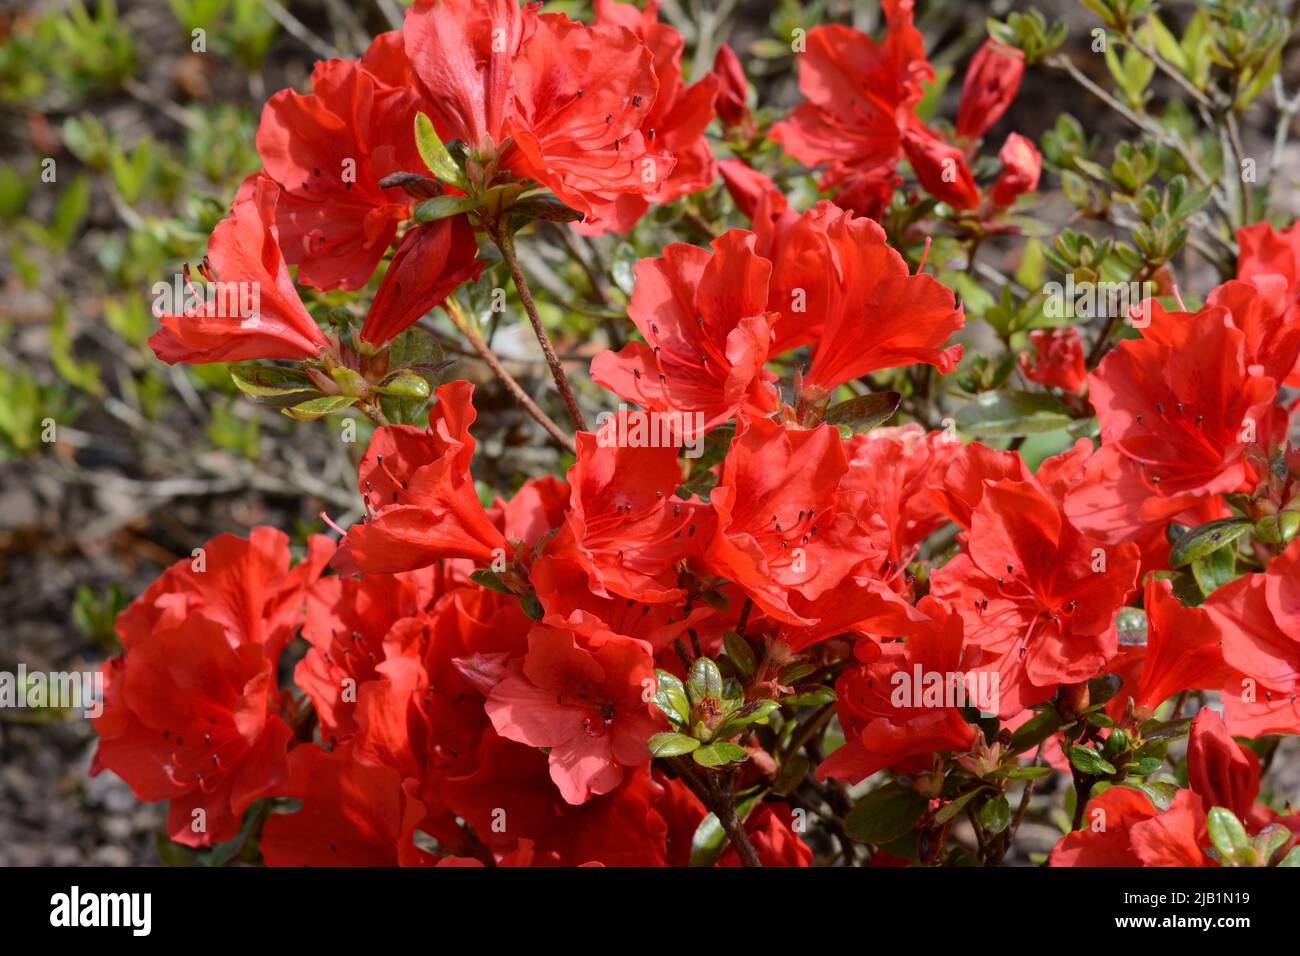 Rhododendron Santa Maria Pequeños racimos de azalea perenne compacta de flores en forma de embudo naranja-rojo Foto de stock